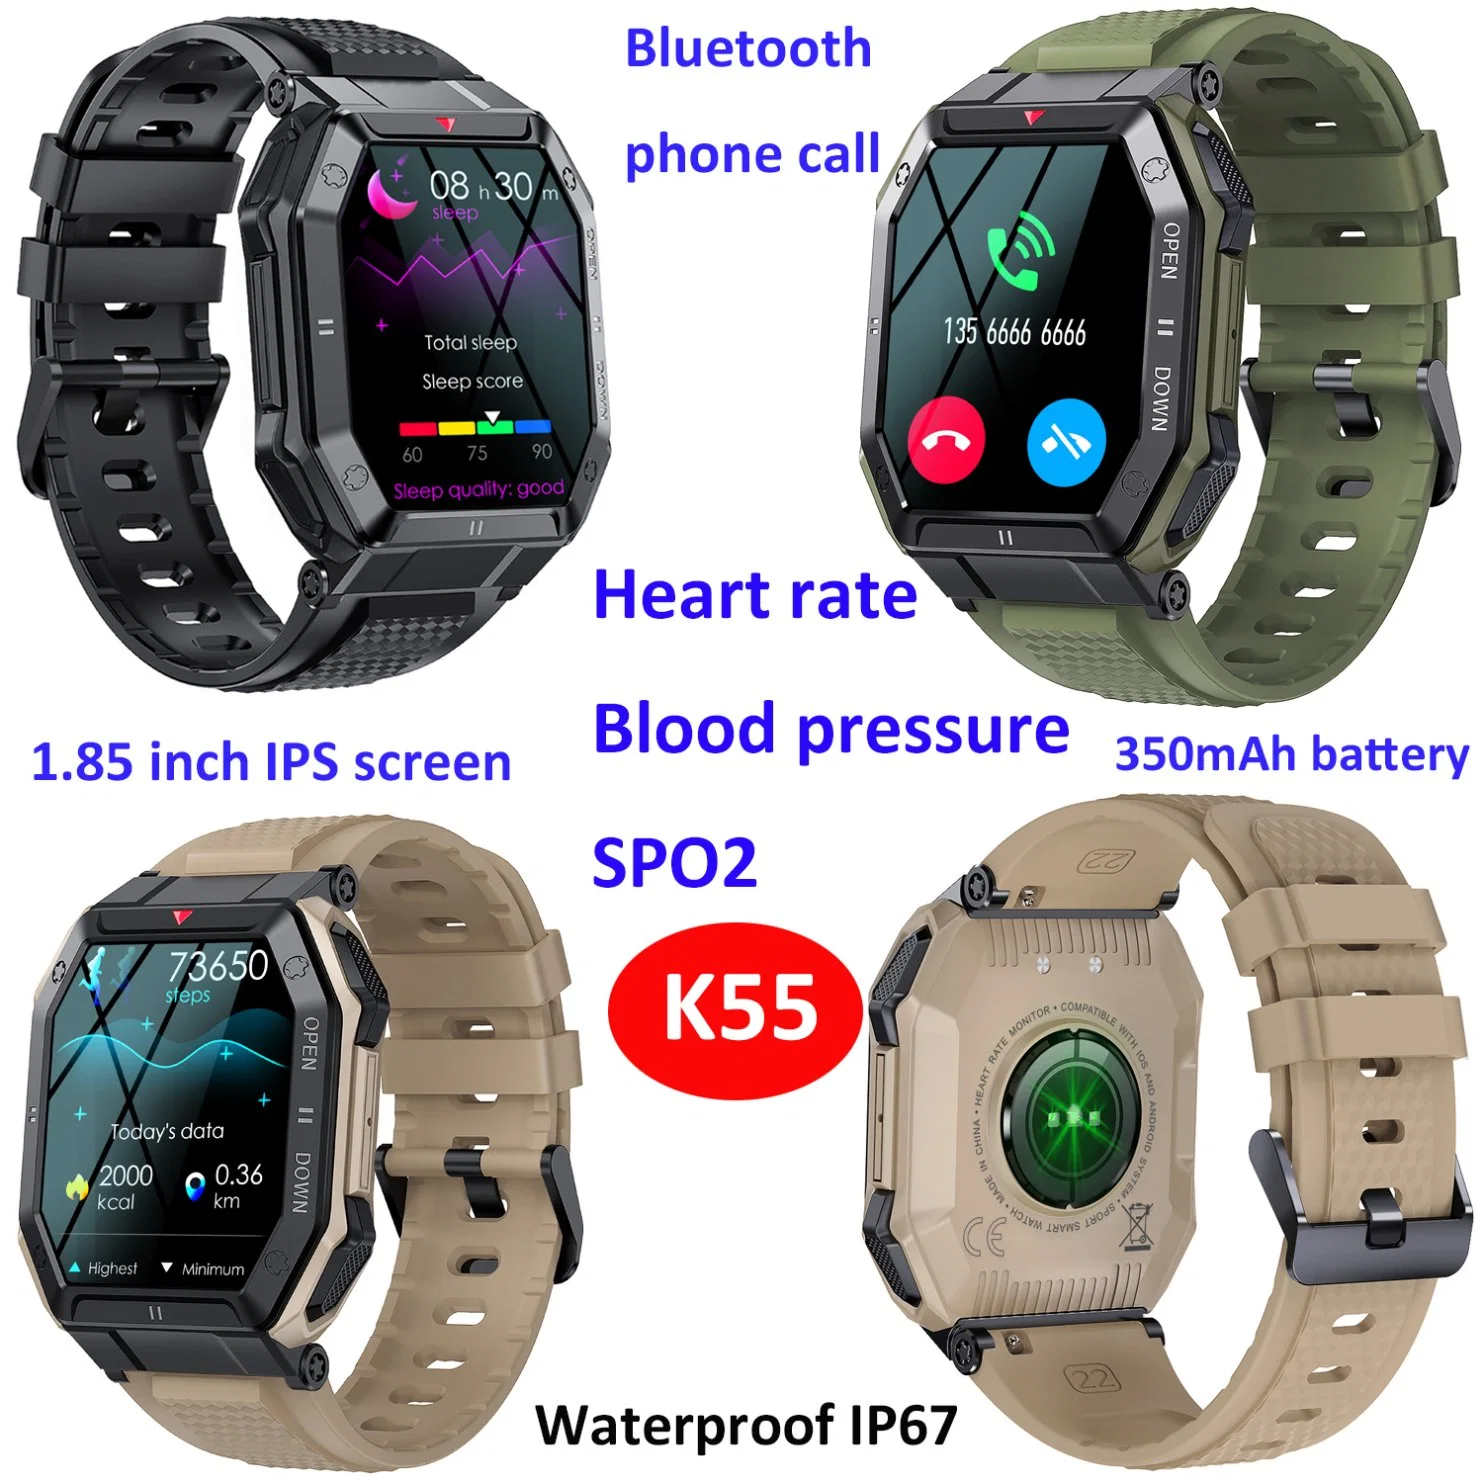 إعادة تحميل ضغط الدم من خلال نظام IOS Android الخاص بمصنع الصين سوار بتقنية Bluetooth® للذكور، هاتف محمول K55